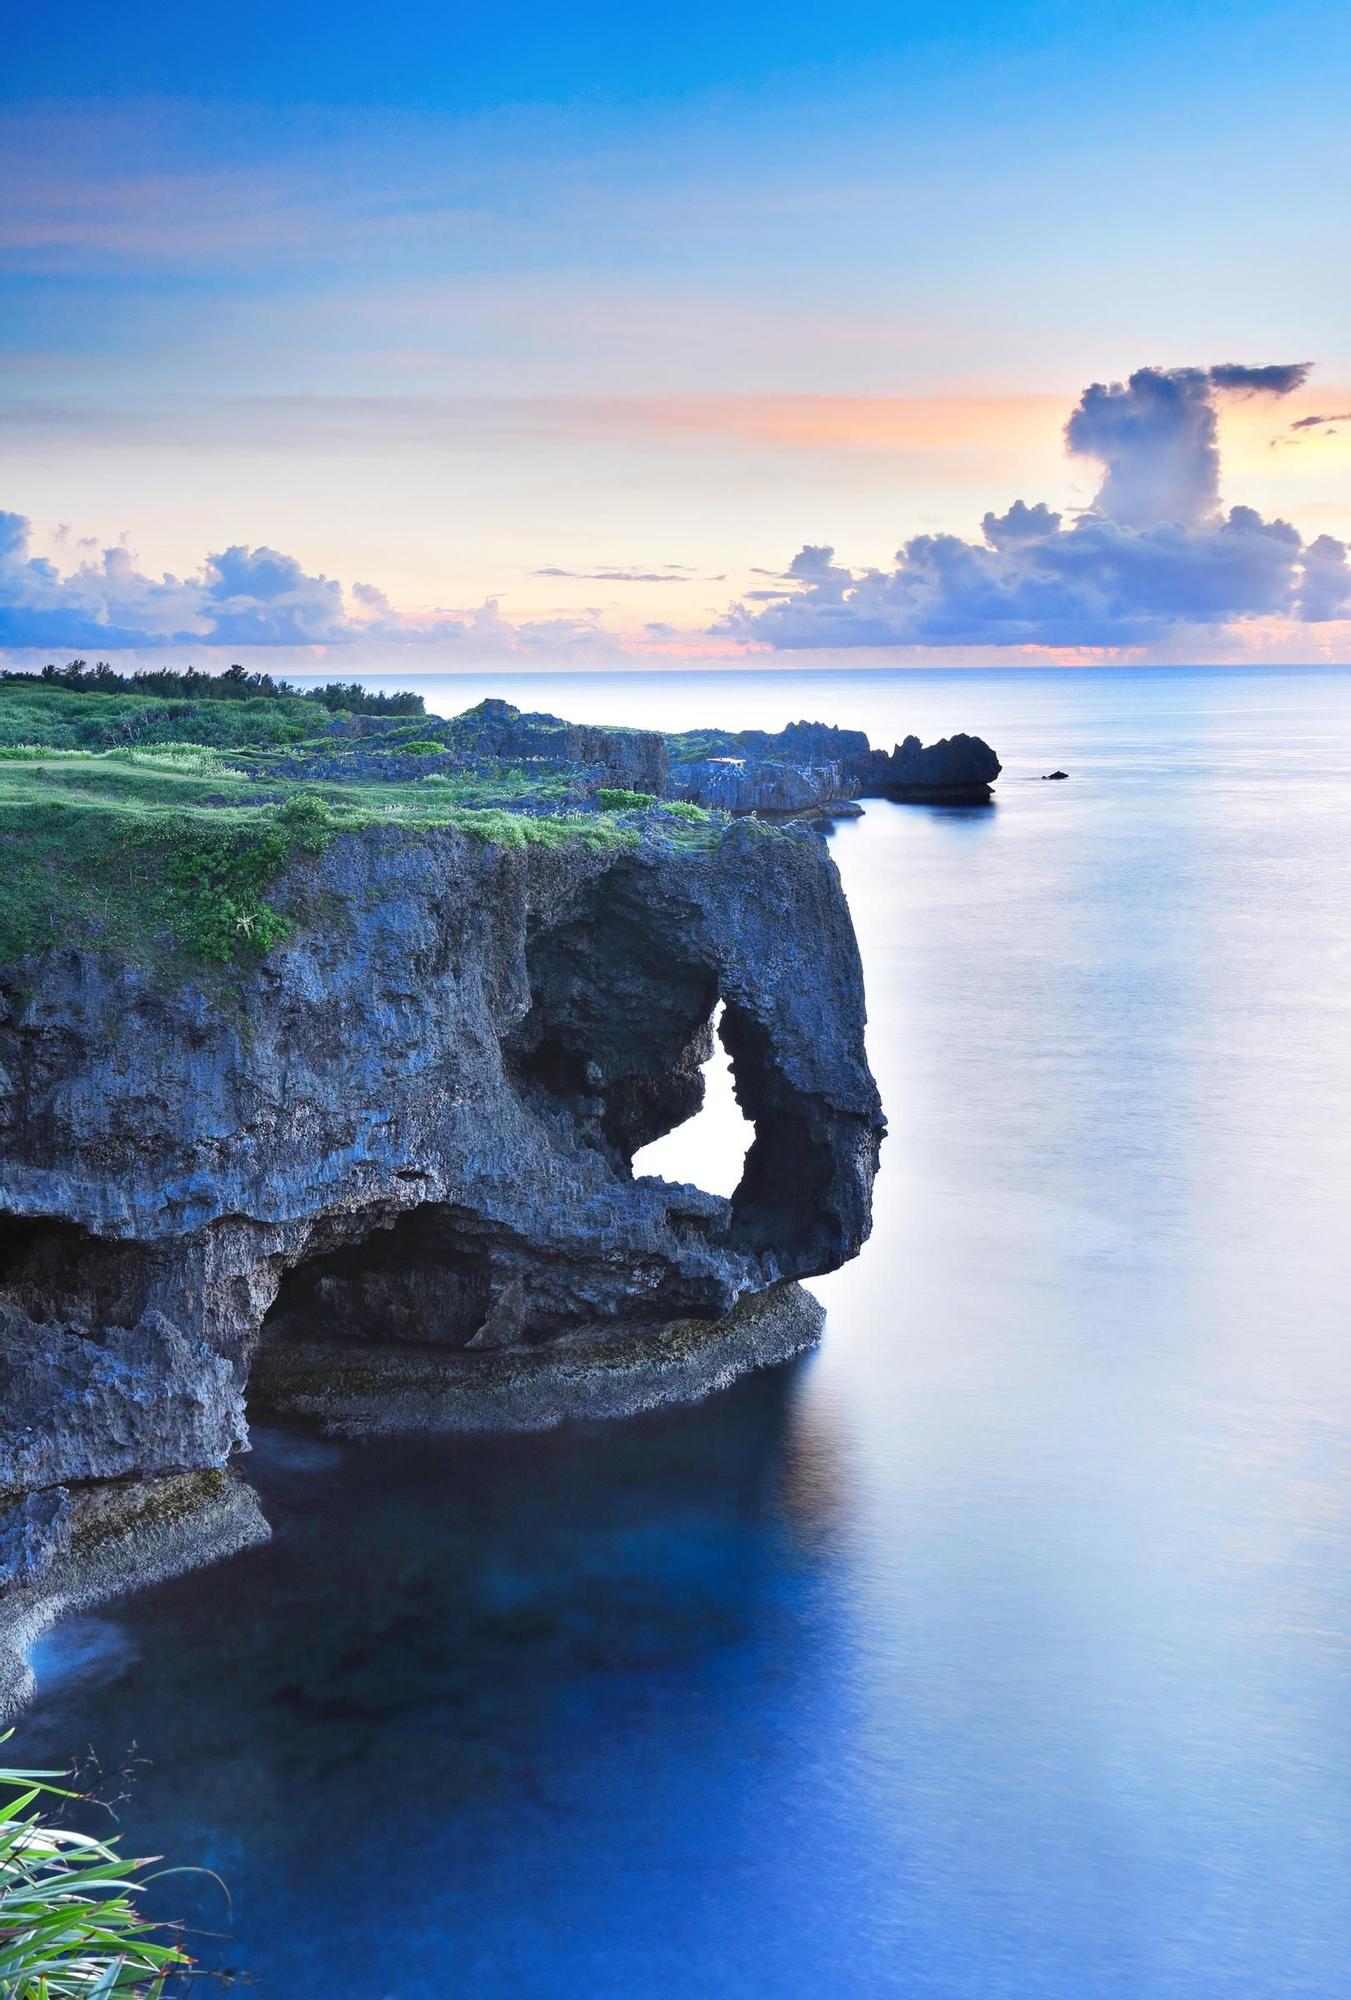 Además del secreto de la longevidad, Okinawa también esconde algunos de los mejores paisajes